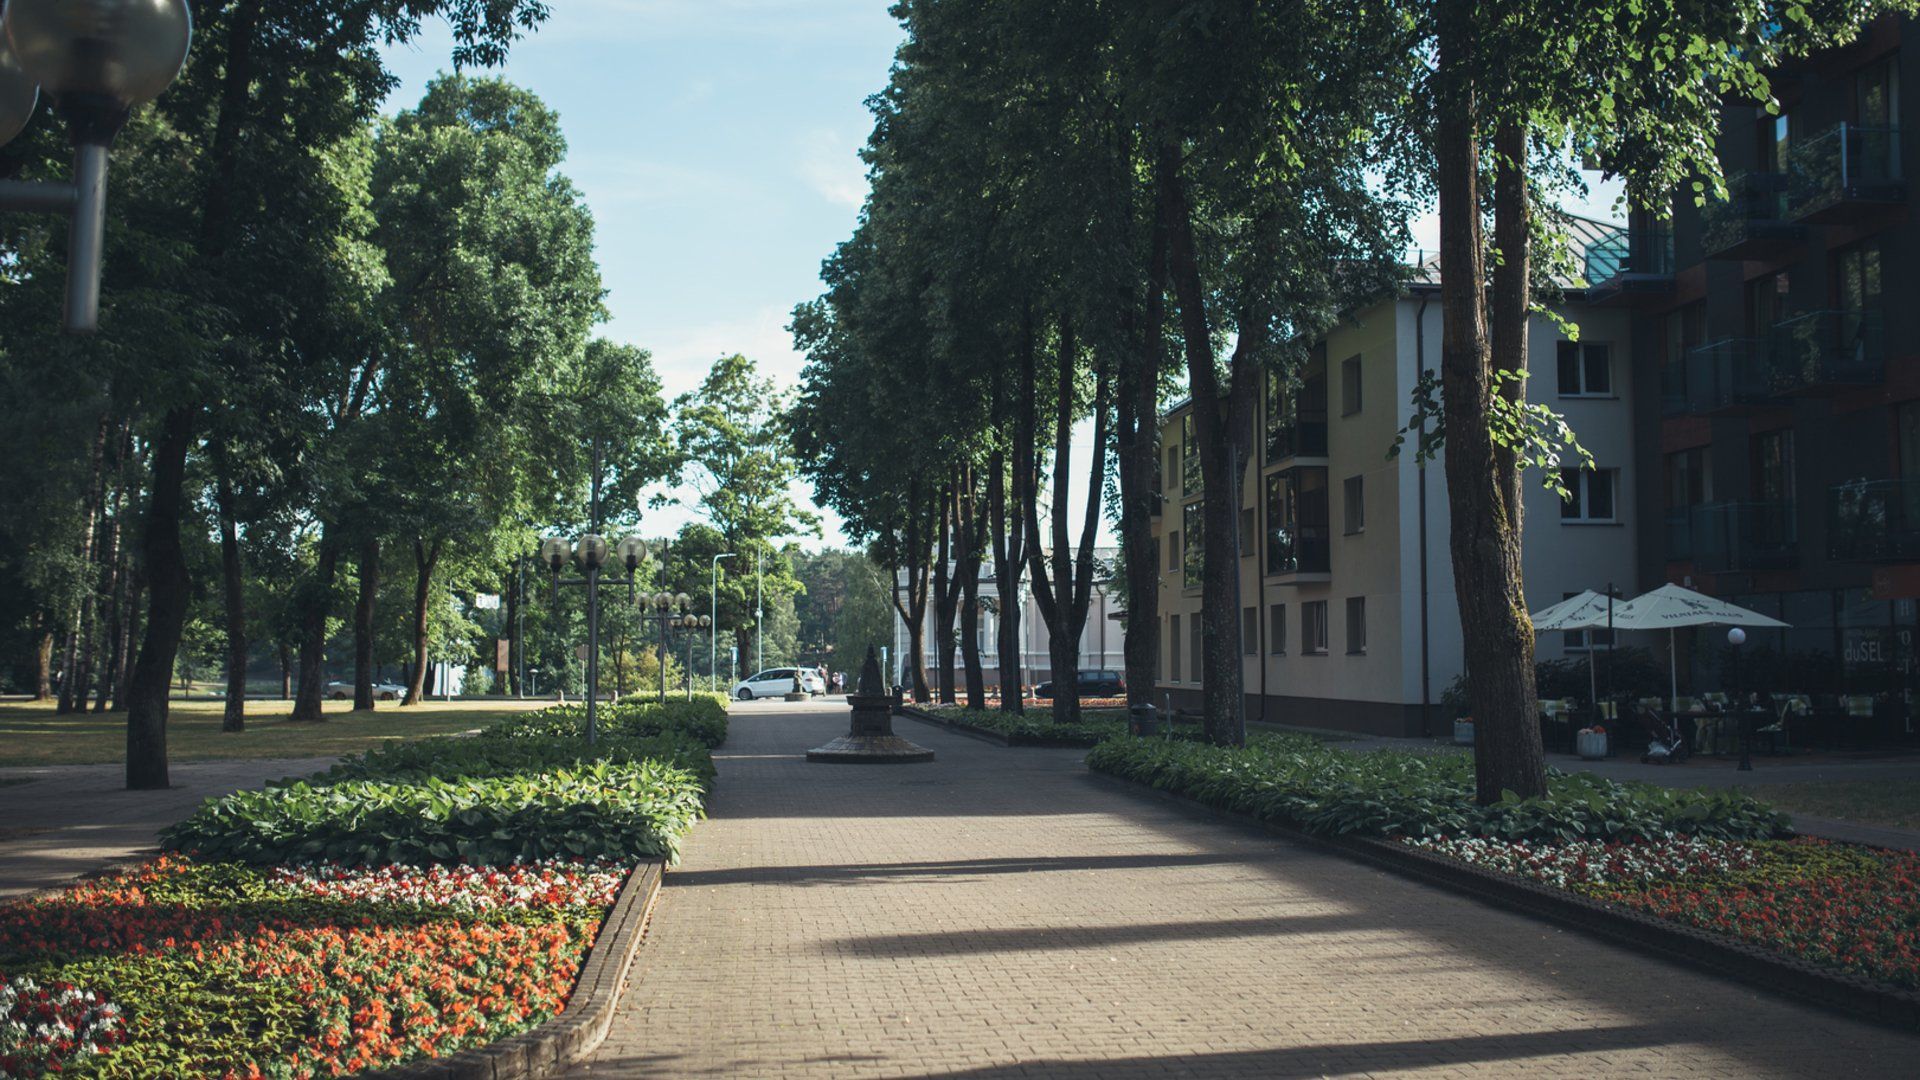 Vilniaus alėja (Druskininkai)